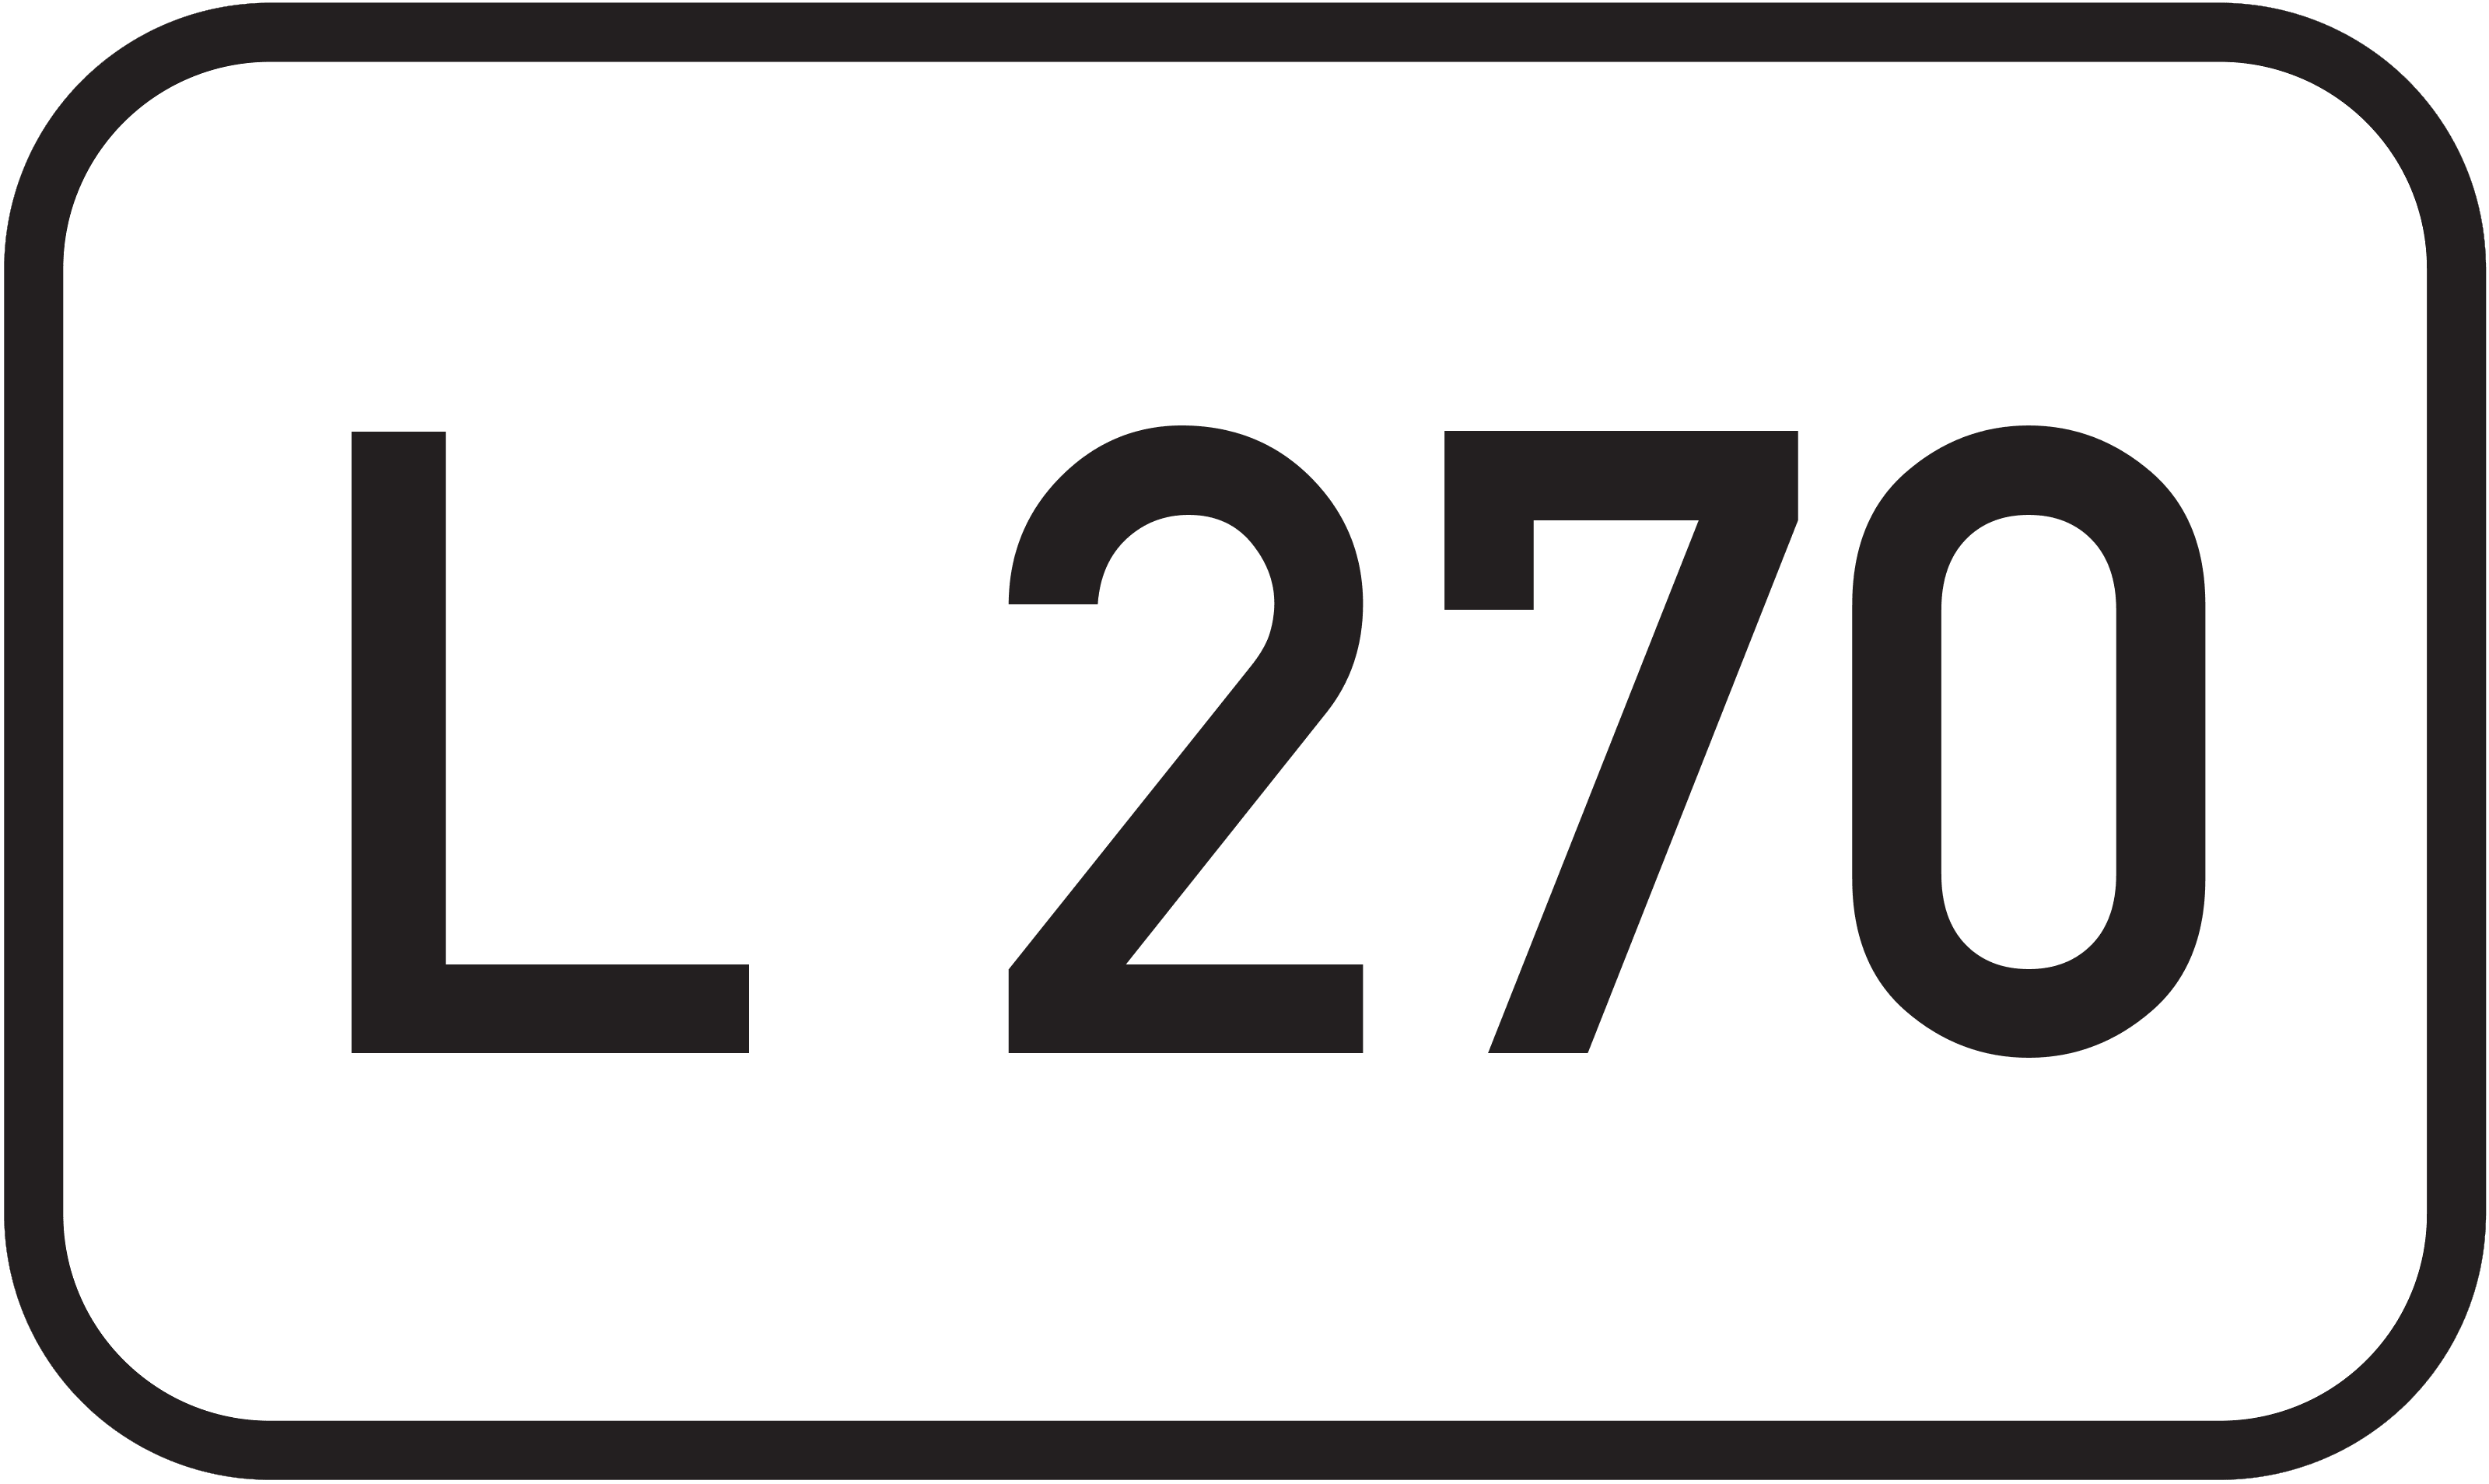 Landesstraße L 270